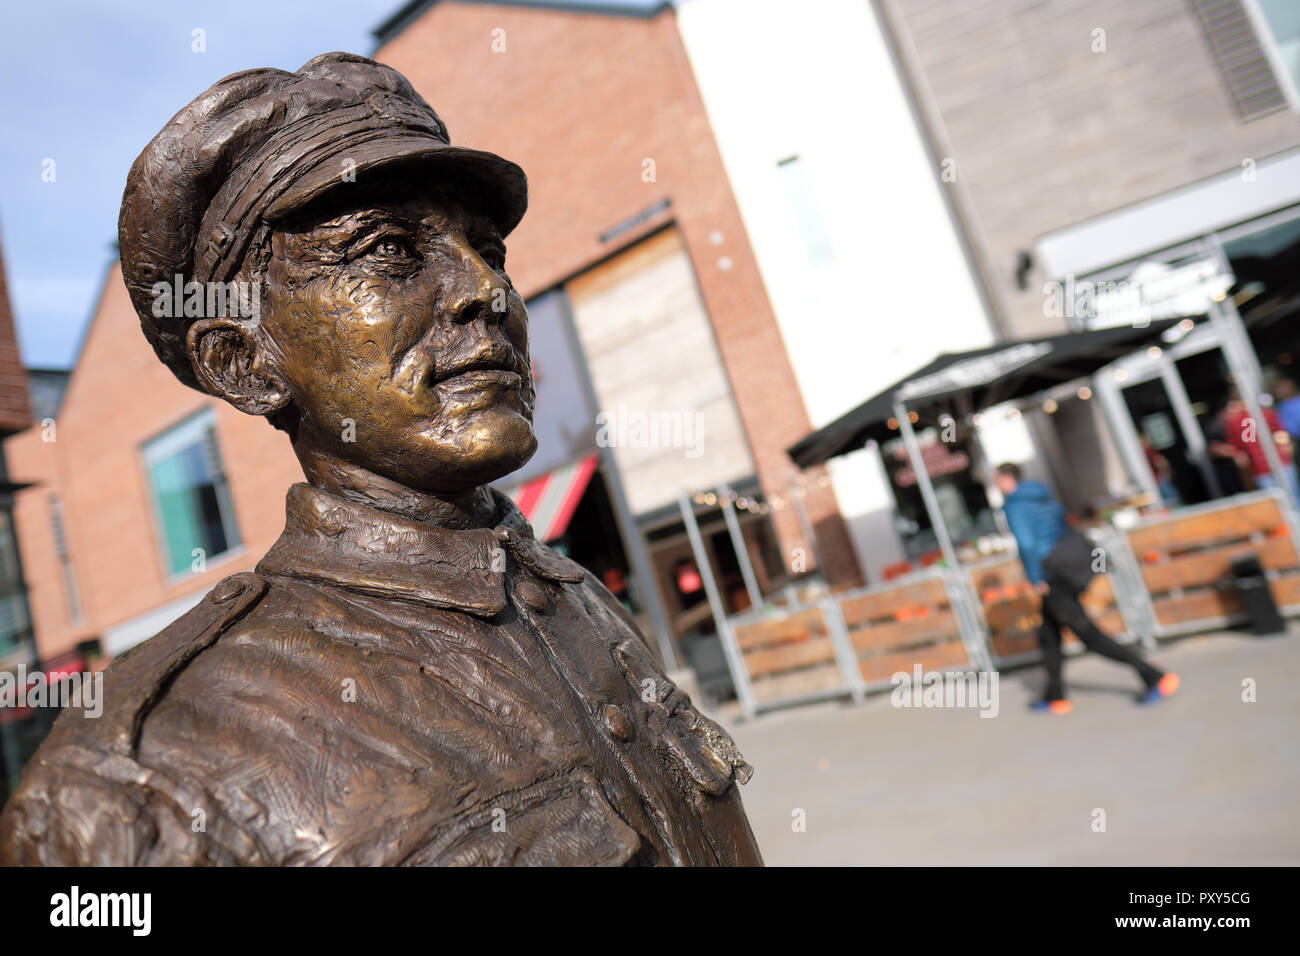 Hereford, Angleterre, Royaume-Uni - statue en bronze de WW1 soldat héros Allan Leonard Lewis VC situé dans le vieux quartier commerçant du marché par le sculpteur Jemma Pearson Banque D'Images